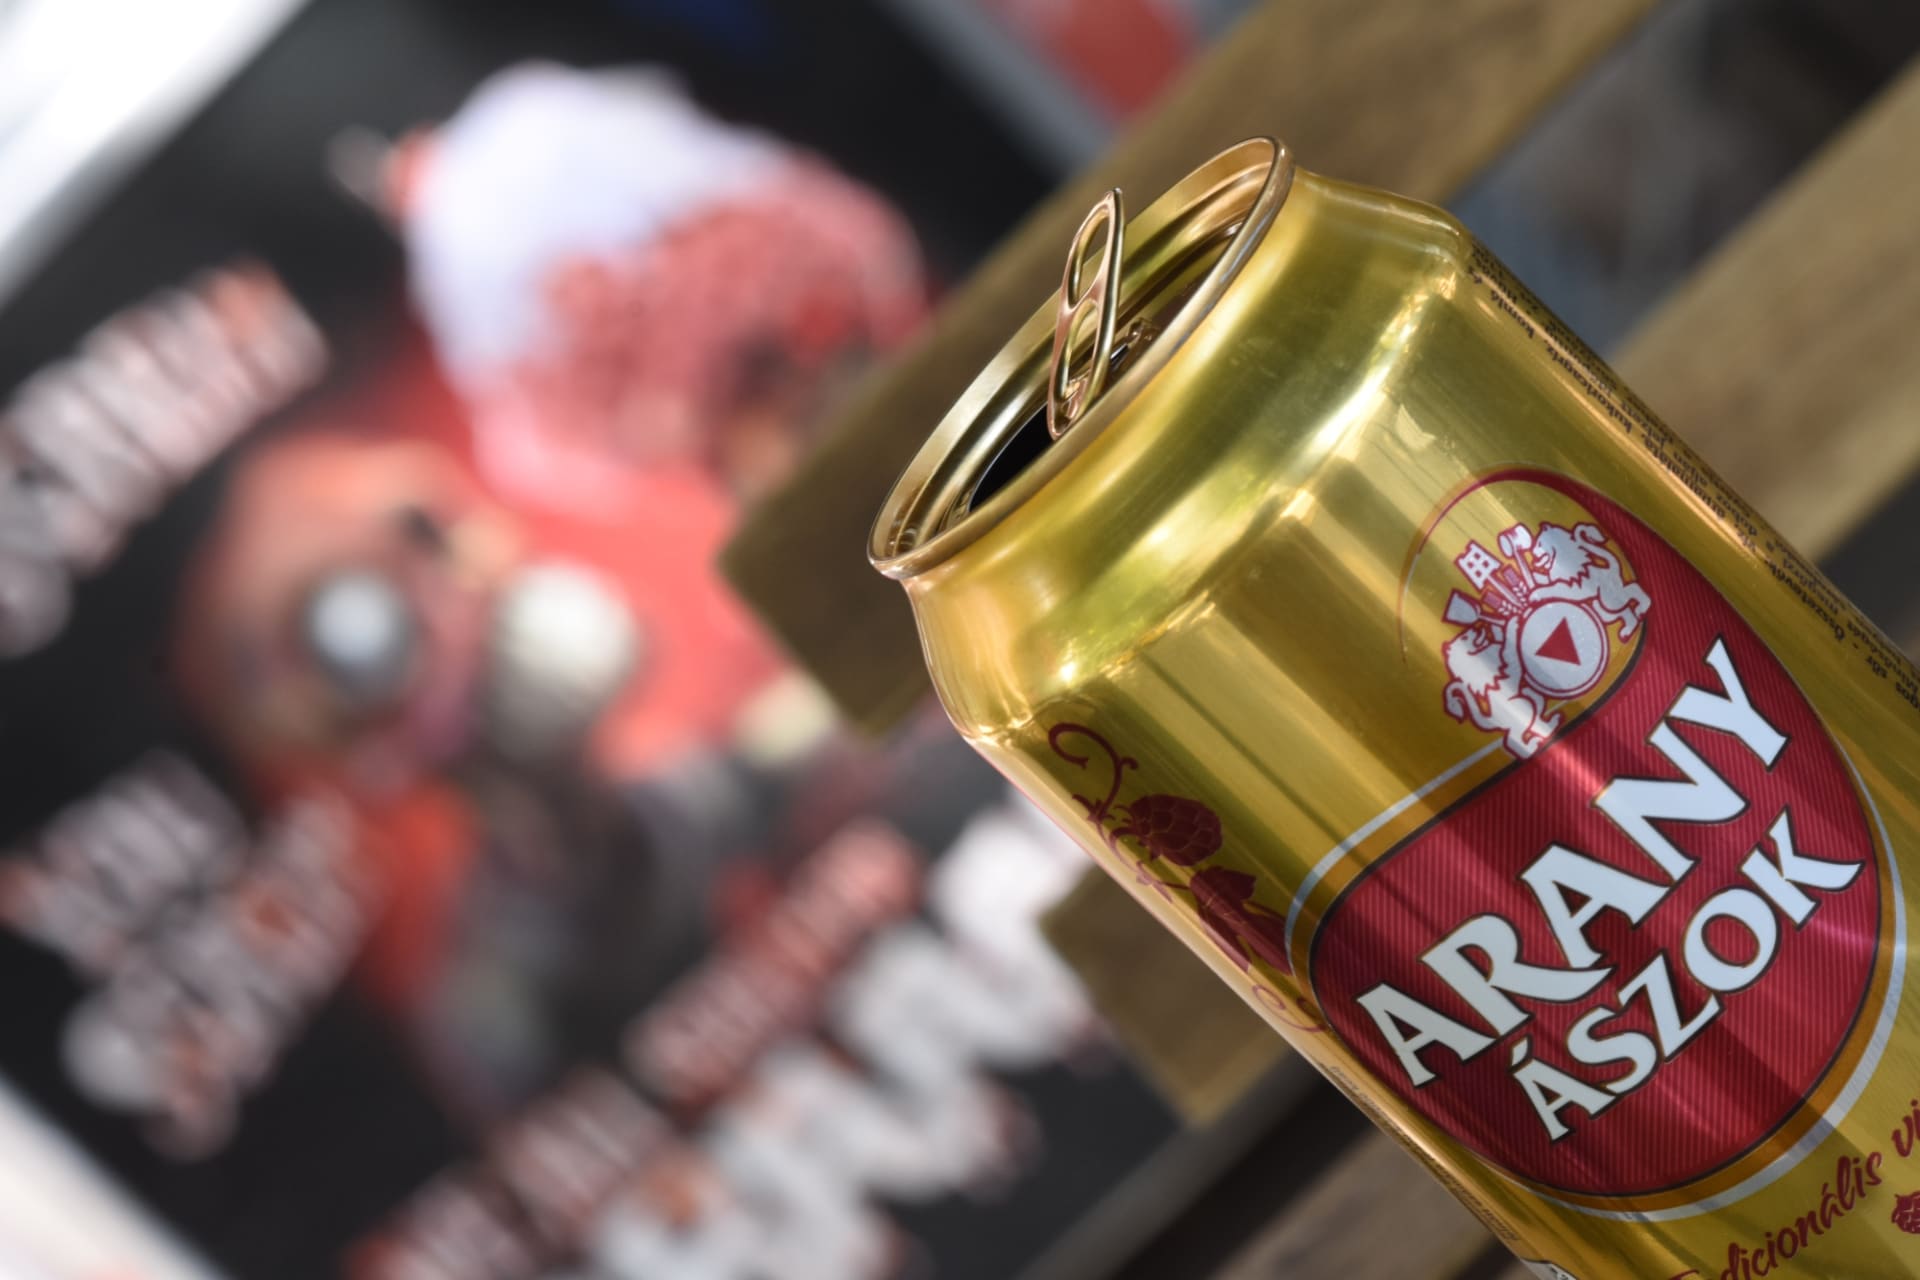 Arany Aszok - nejlevnější pivo v Budapešti